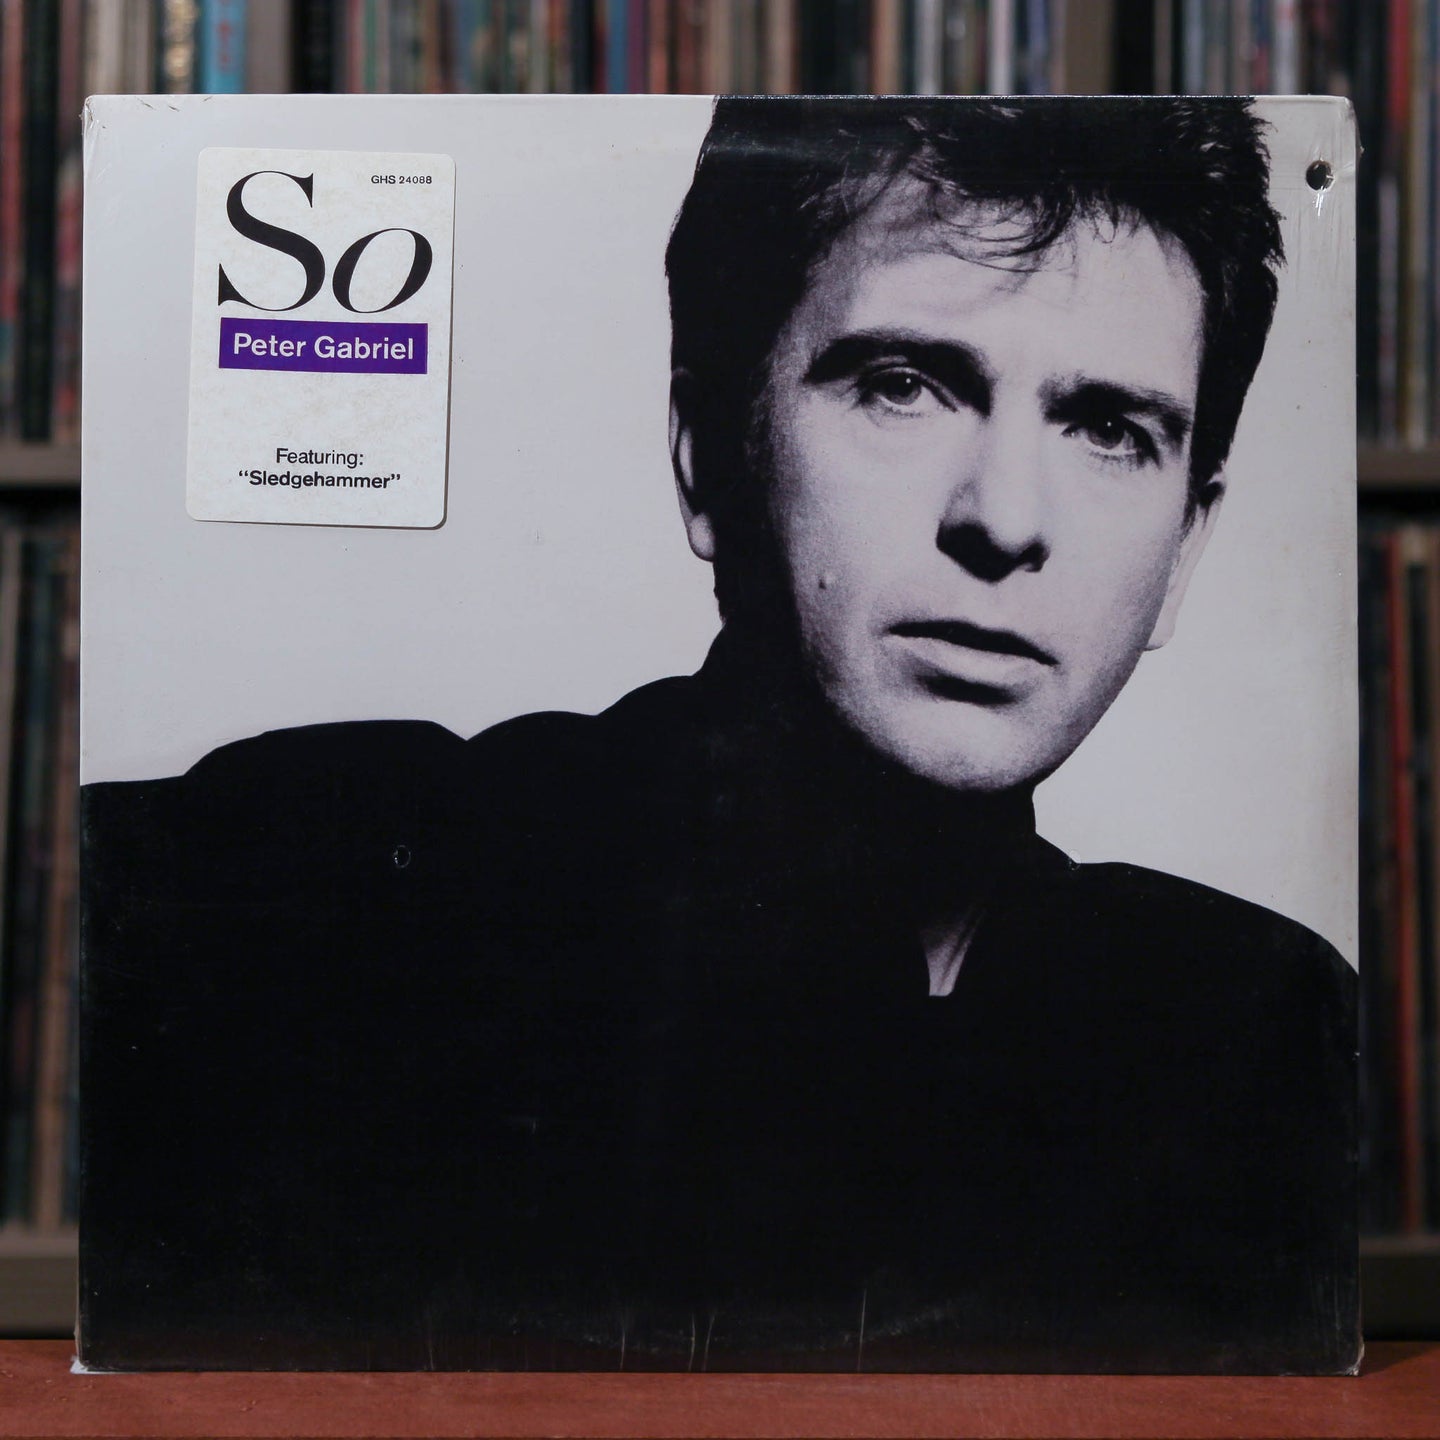 Peter Gabriel - So - 1986 Geffen, SEALED